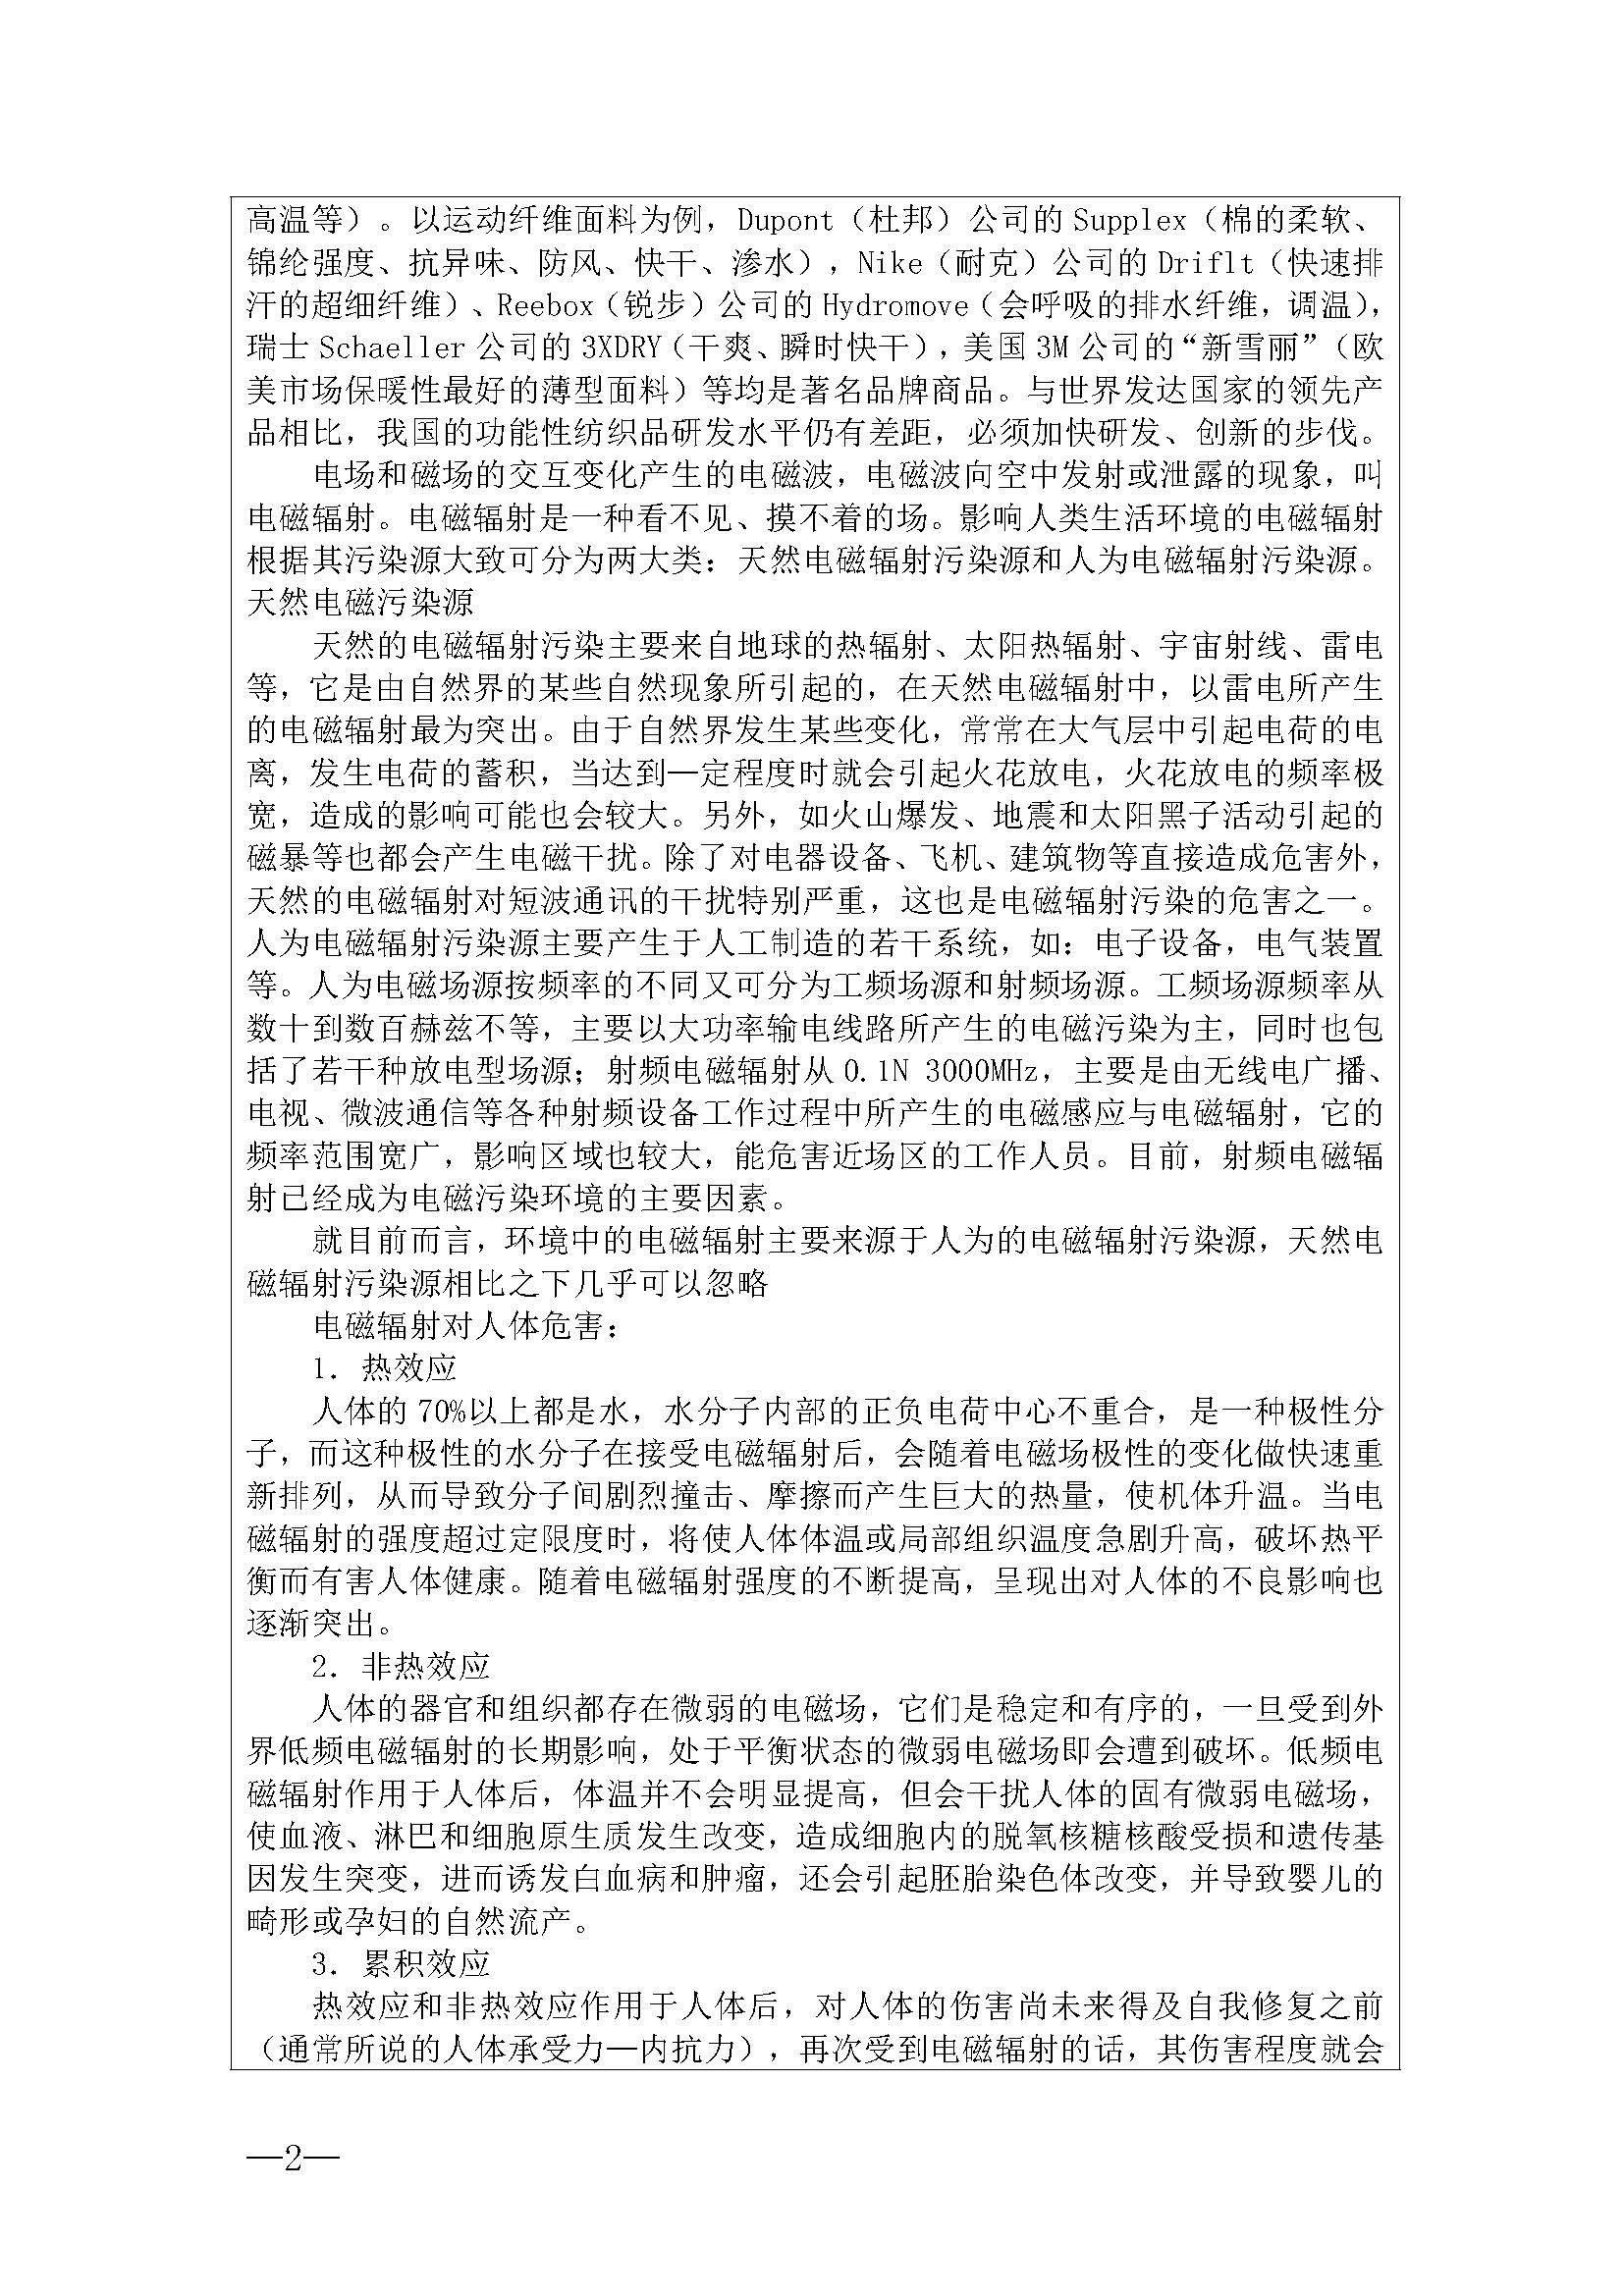 表2广东省纺织团体标准项目建议书-抗辐射内衣_页面_2.jpg